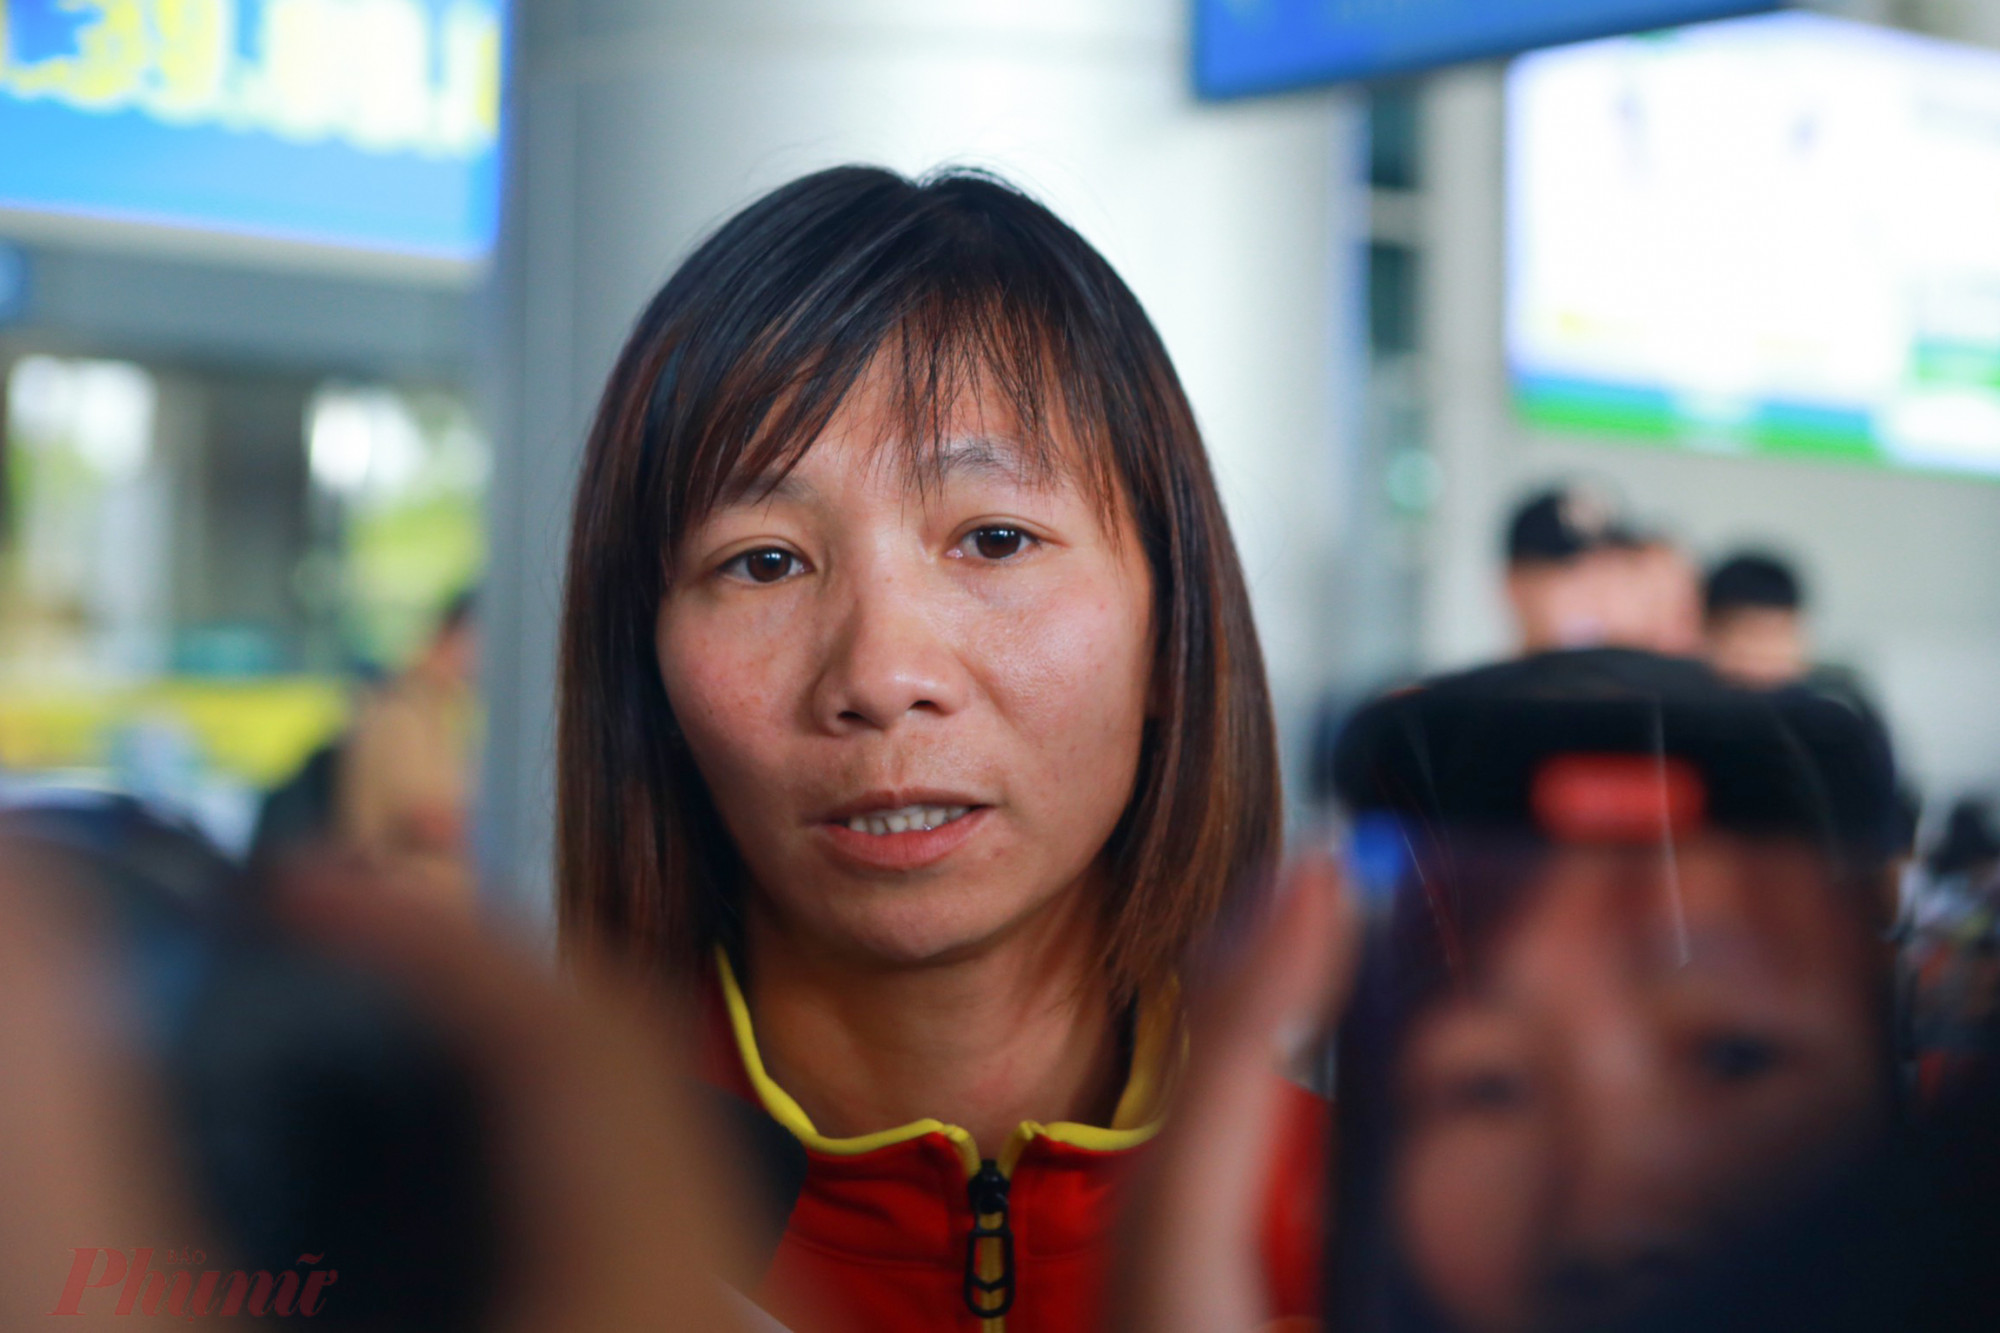 Tiền vệ Thùy Trang là cầu thủ duy nhất không được ra sân ở đấu trường Word Cup, dù cô có nhiều đóng góp trong chiến dịch đưa đội tuyển đến với sân chơi lớn nhất hành tinh. 